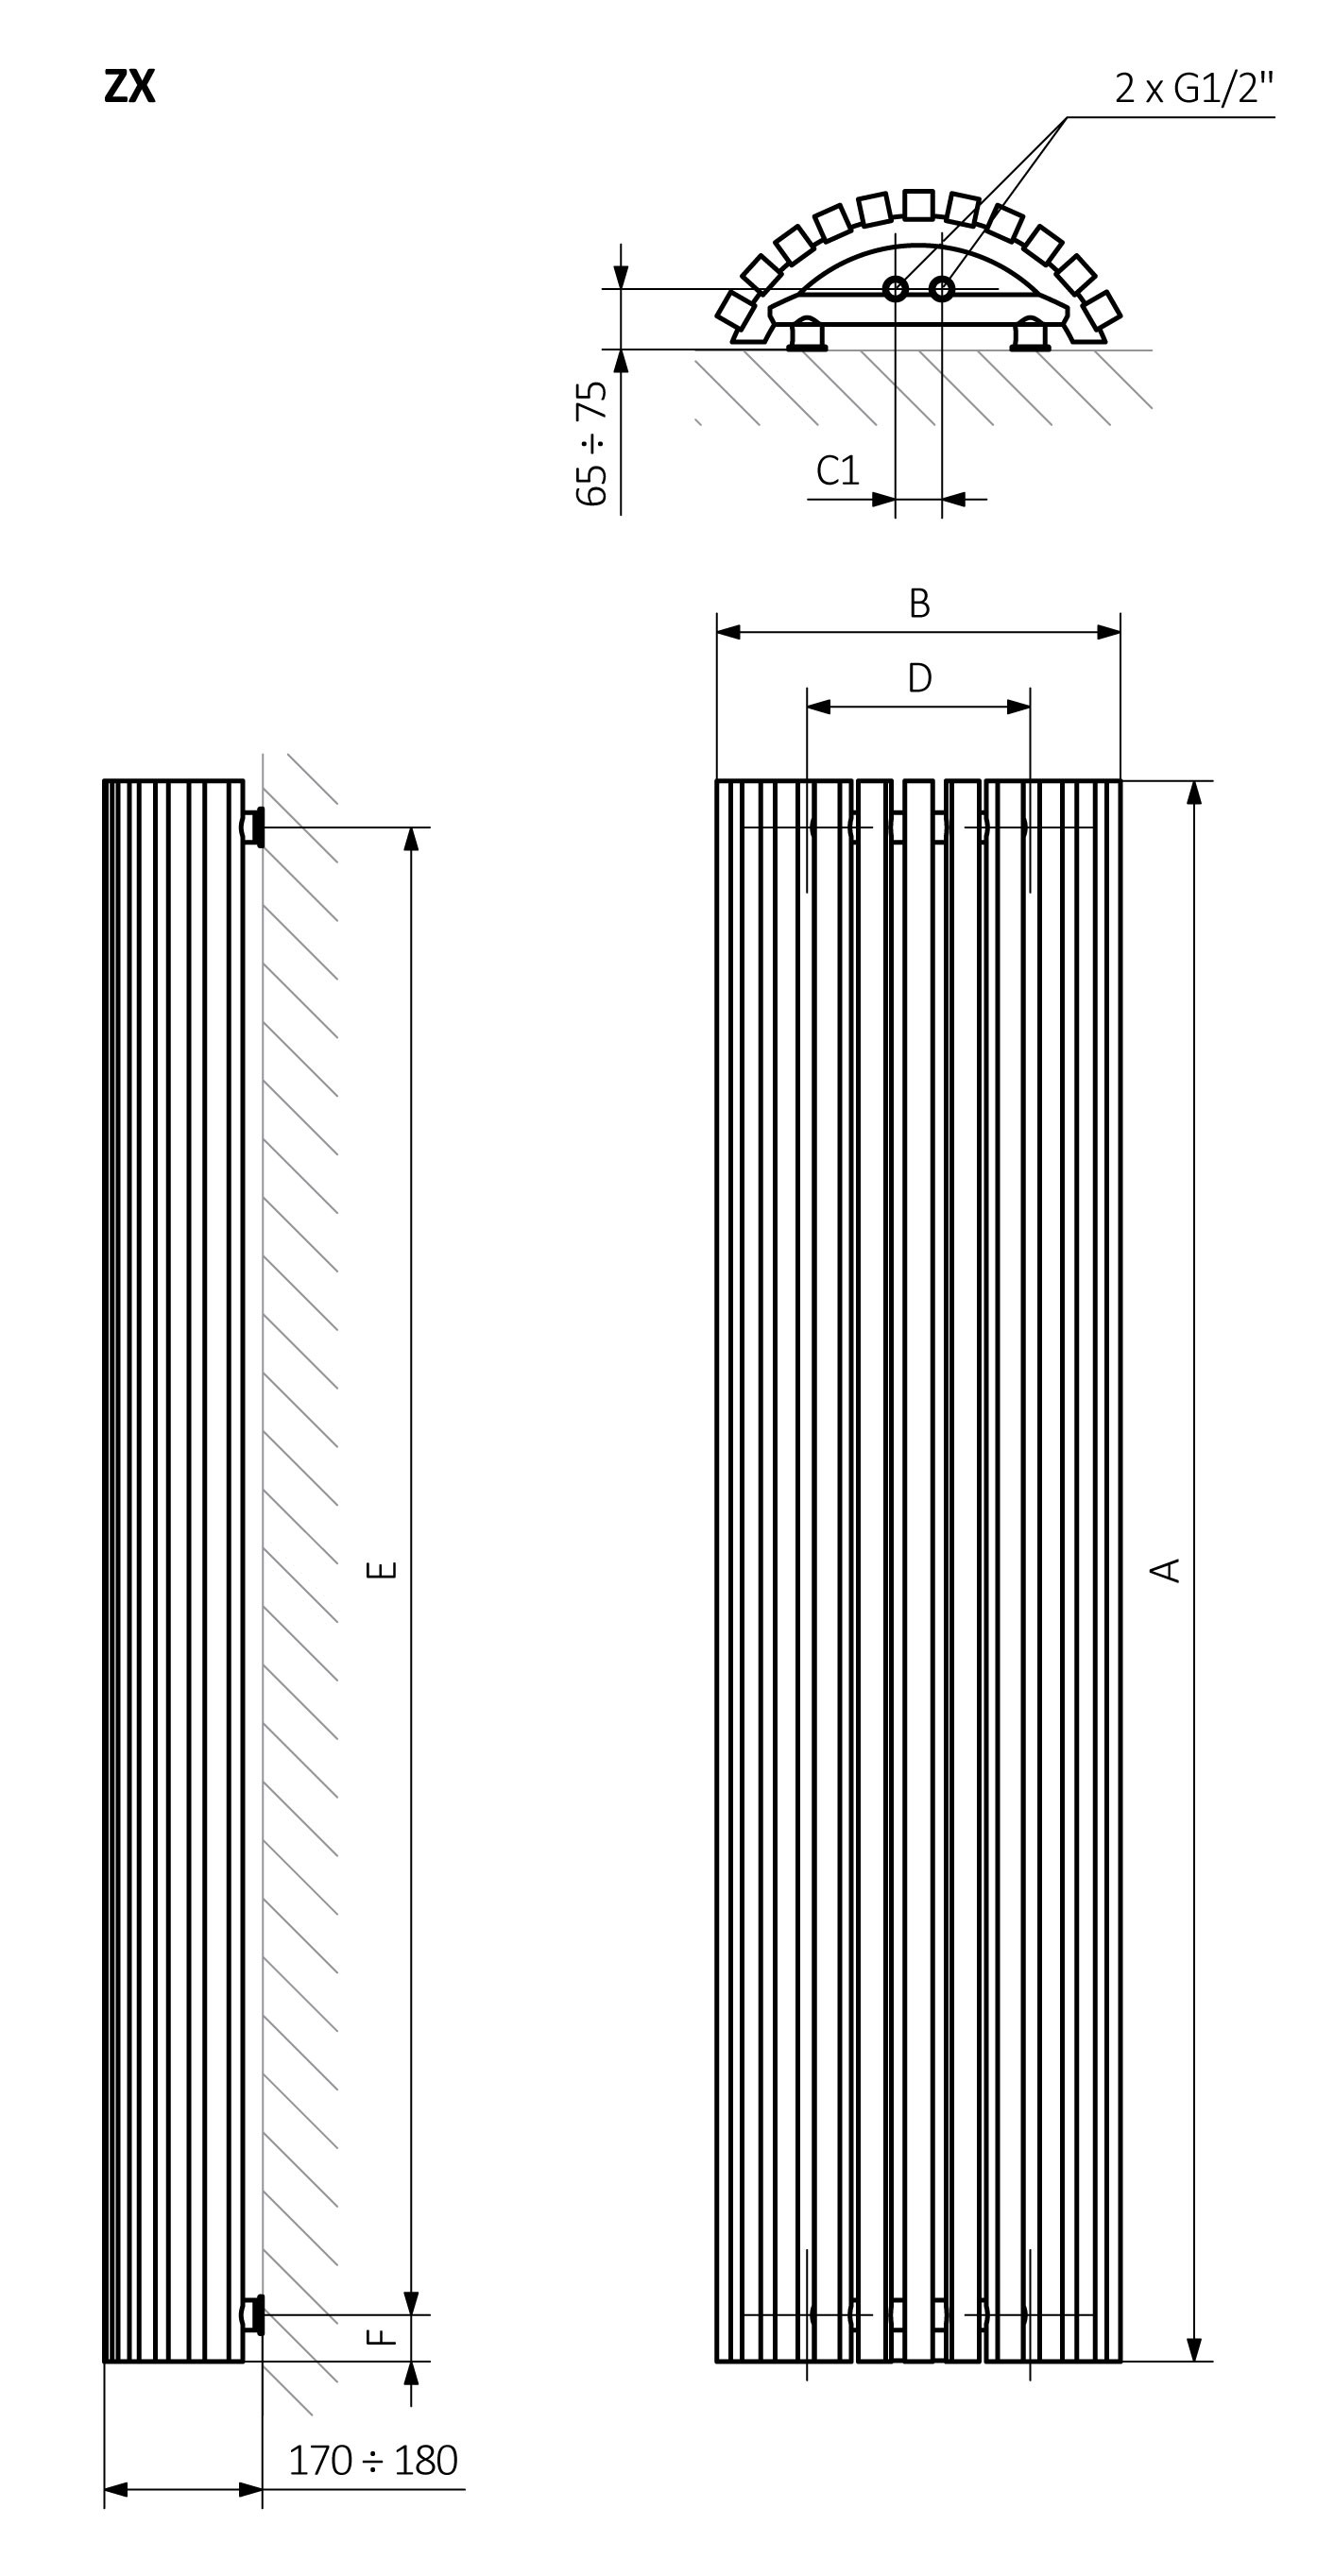 A - Výška B - Šířka C1-C5 - Vzdálenost mezi přípojkami D - Vzdálenost mezi držáky ve vodorovném směru E - Vzdálenost vertikálních prvků ve svislé poloze F - Vzdálenost od spodní osy spojovacích prvků ke spodnímu okraji kolektoru
